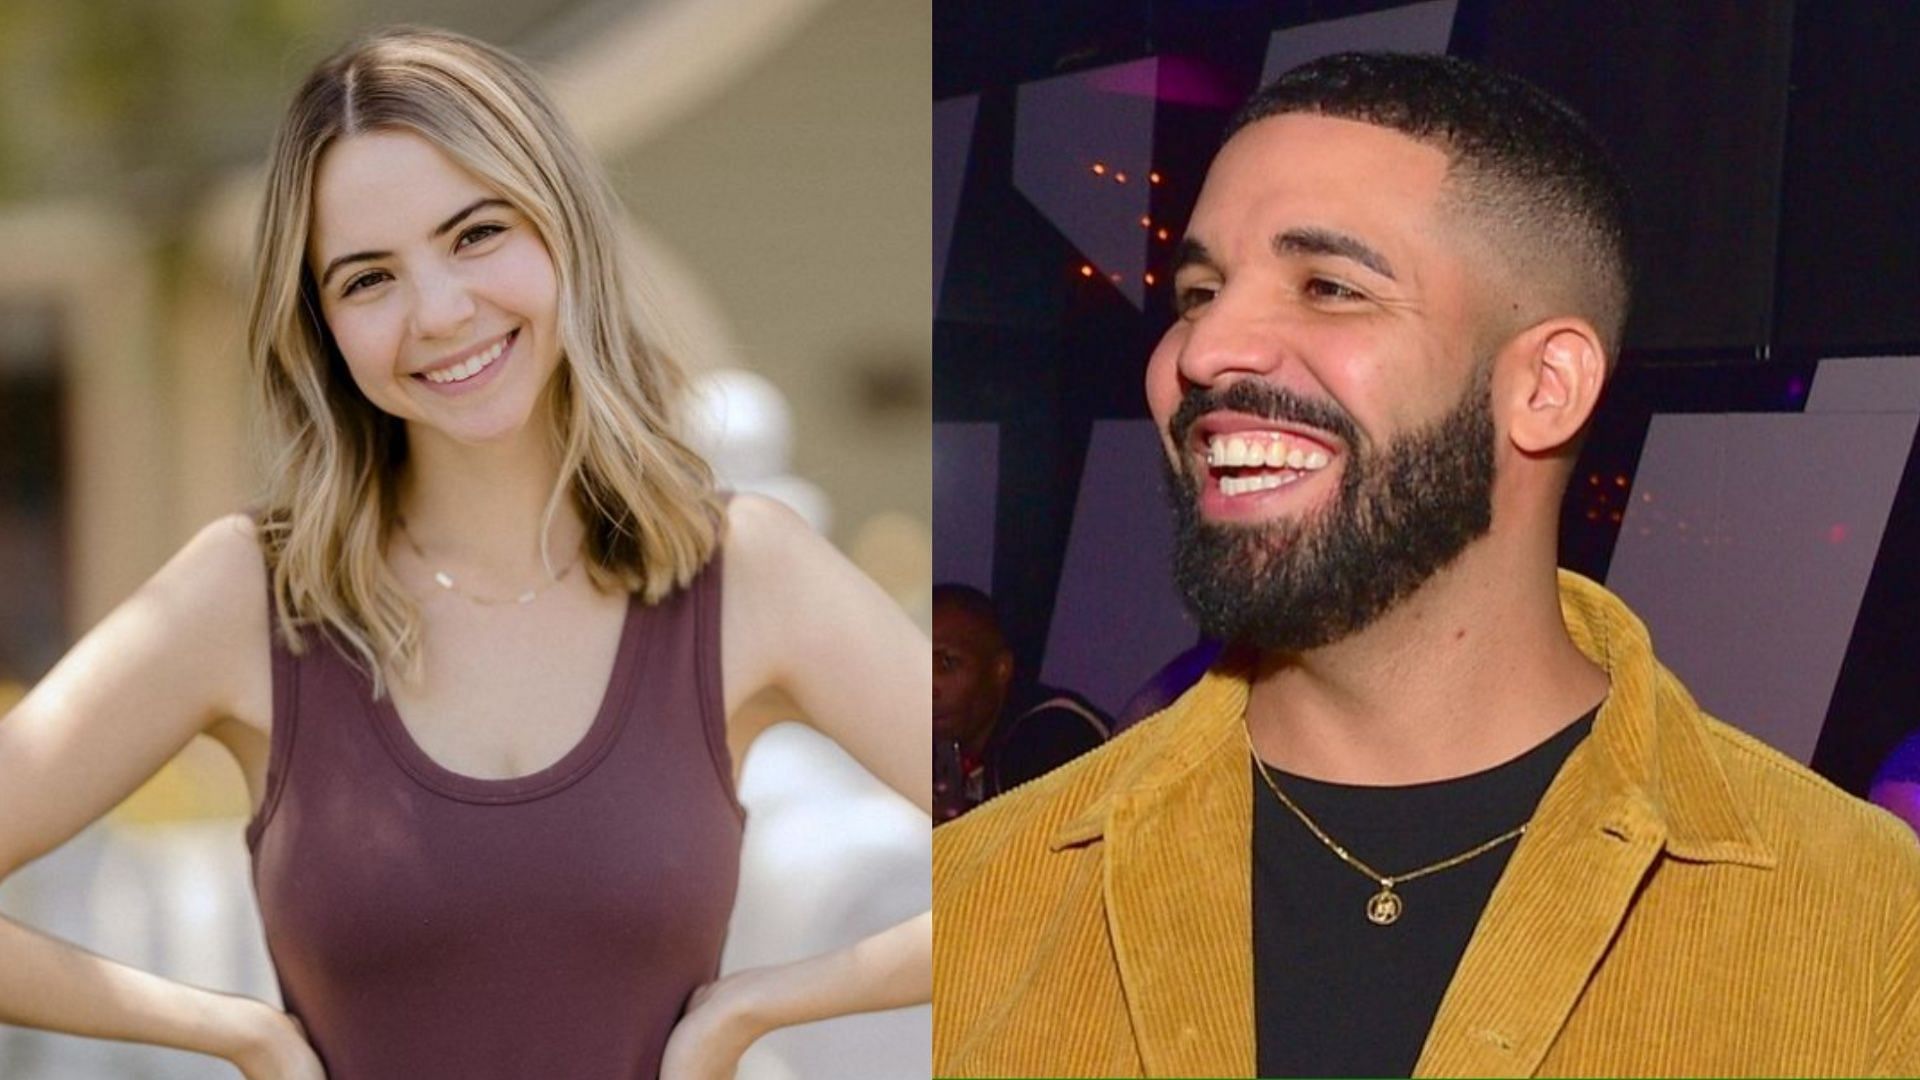 Bobbi Althoff faces industry plant allegations as Drake concert video goes viral. (Image via Instagram/Bobbi Althoff, Getty Images)